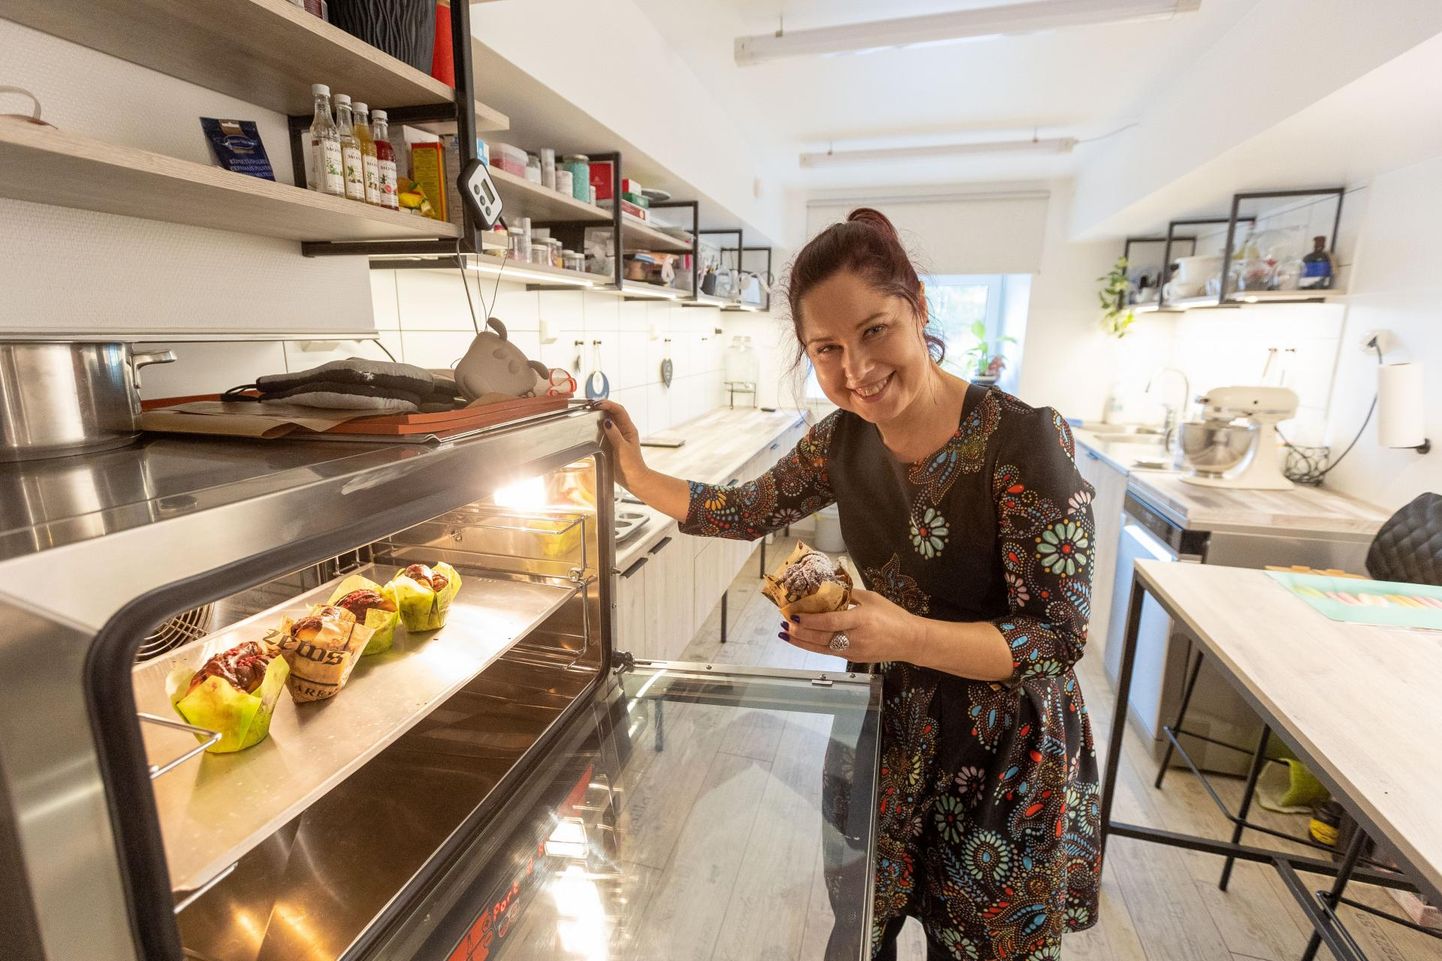 Et Maie Pihli ei oska töötu olla, otsustas ta hakata väikeettevõtjaks ja tegeleda sellega, mida ta kõige paremini mõistab – küpsetamisega.